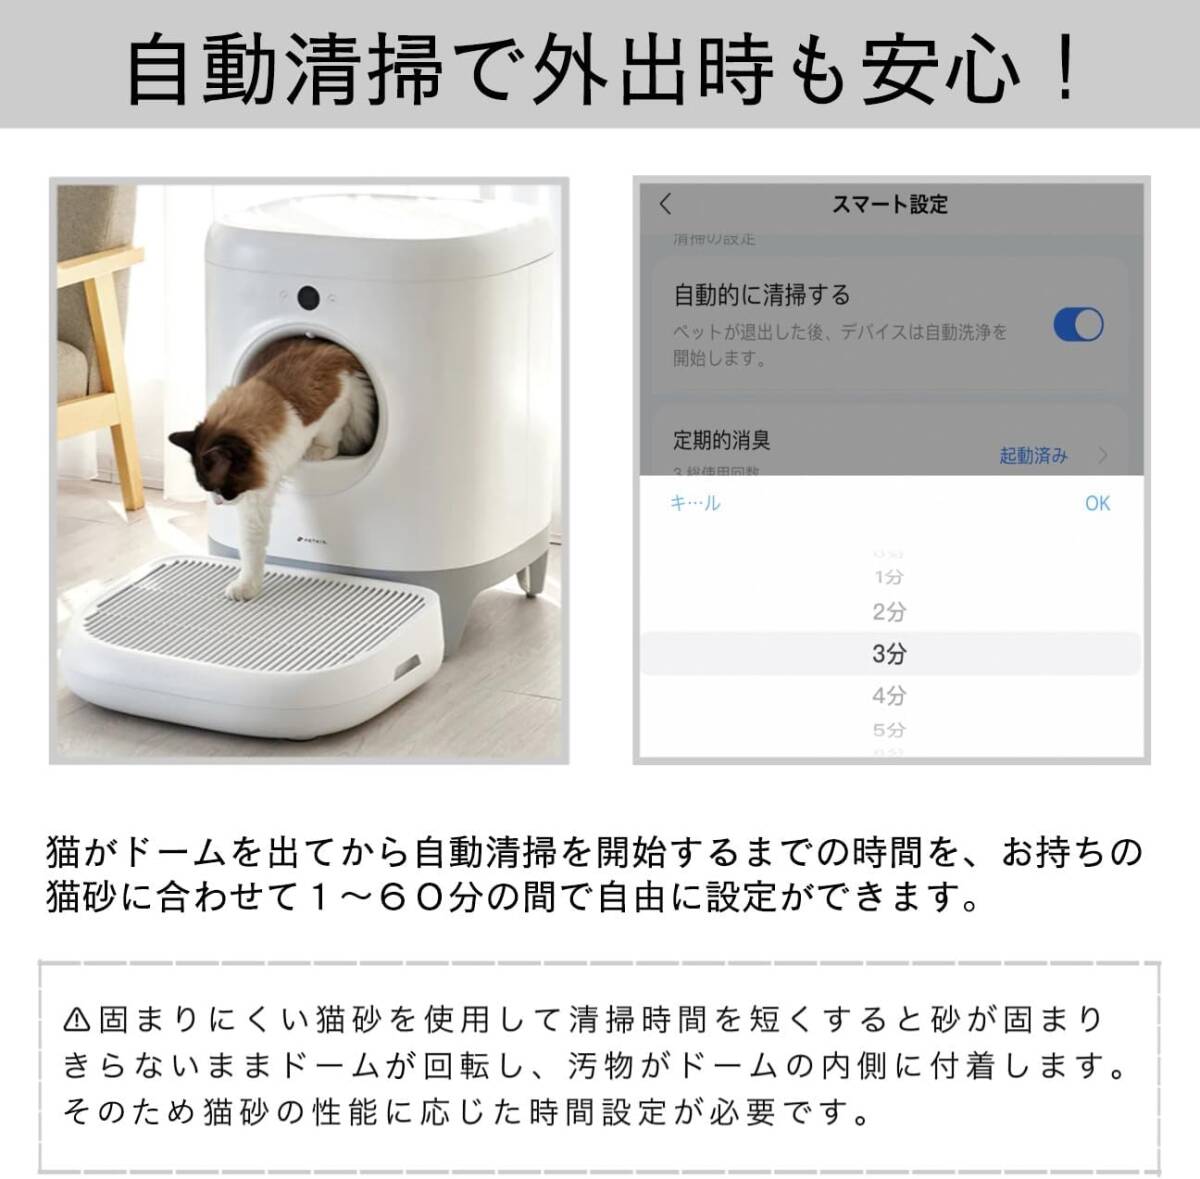 [ рабочее время .... Smart .!] автоматика кошка туалет .. предотвращение автоматика чистка тщательный дезодорация безопасность защита функция безопасность 1 год гарантия смартфон управление чистый удобный 